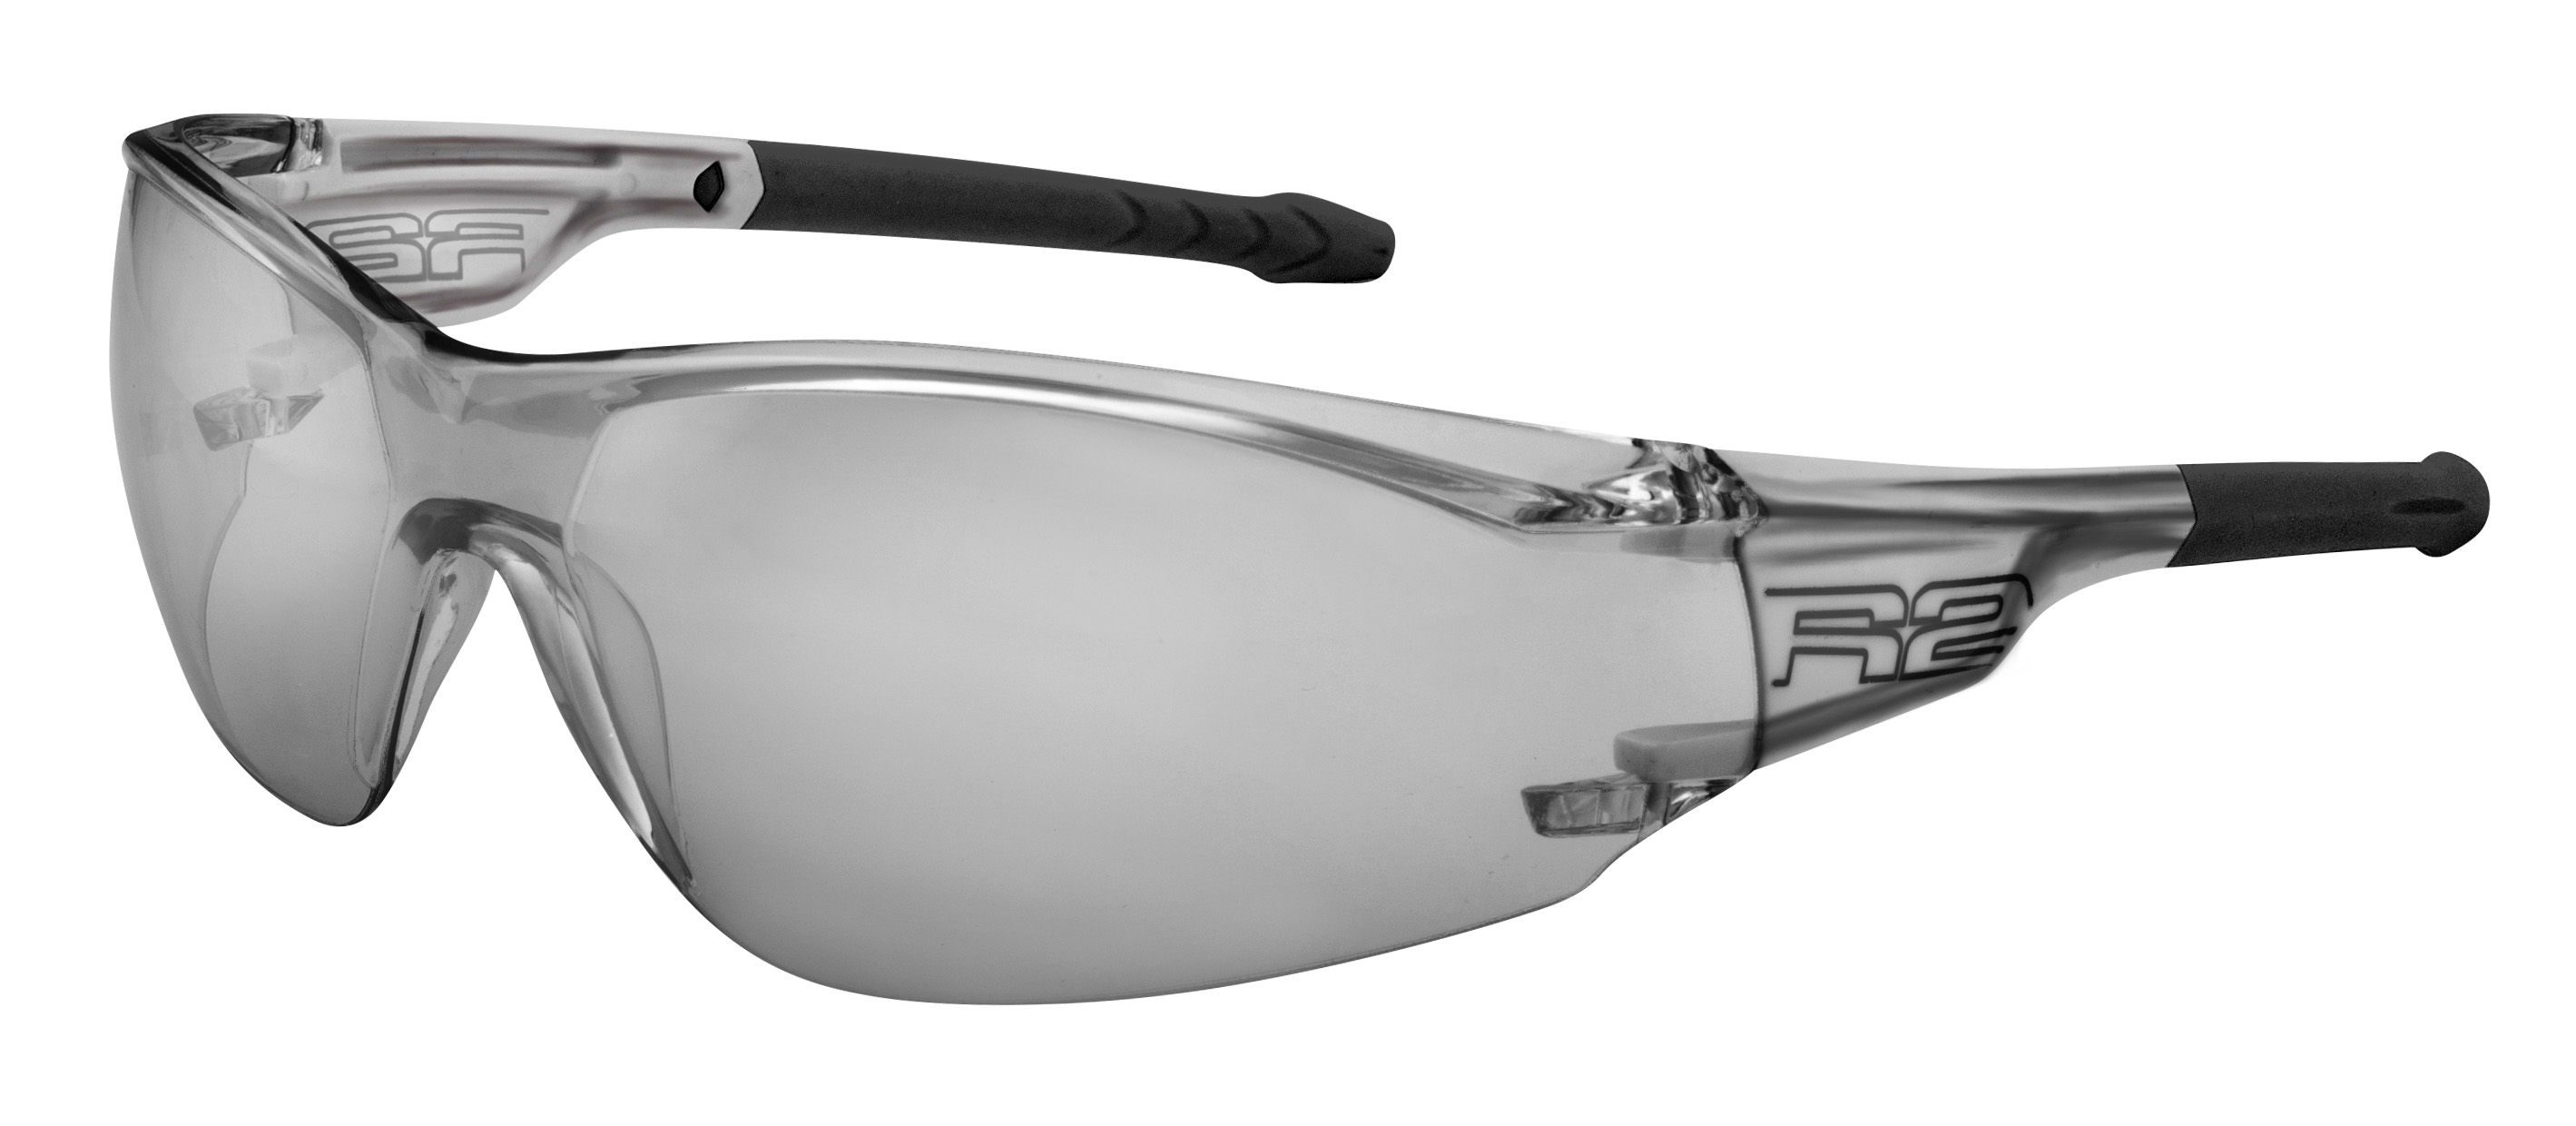 Sport sunglasses R2 ALLIGATOR2 AT112C